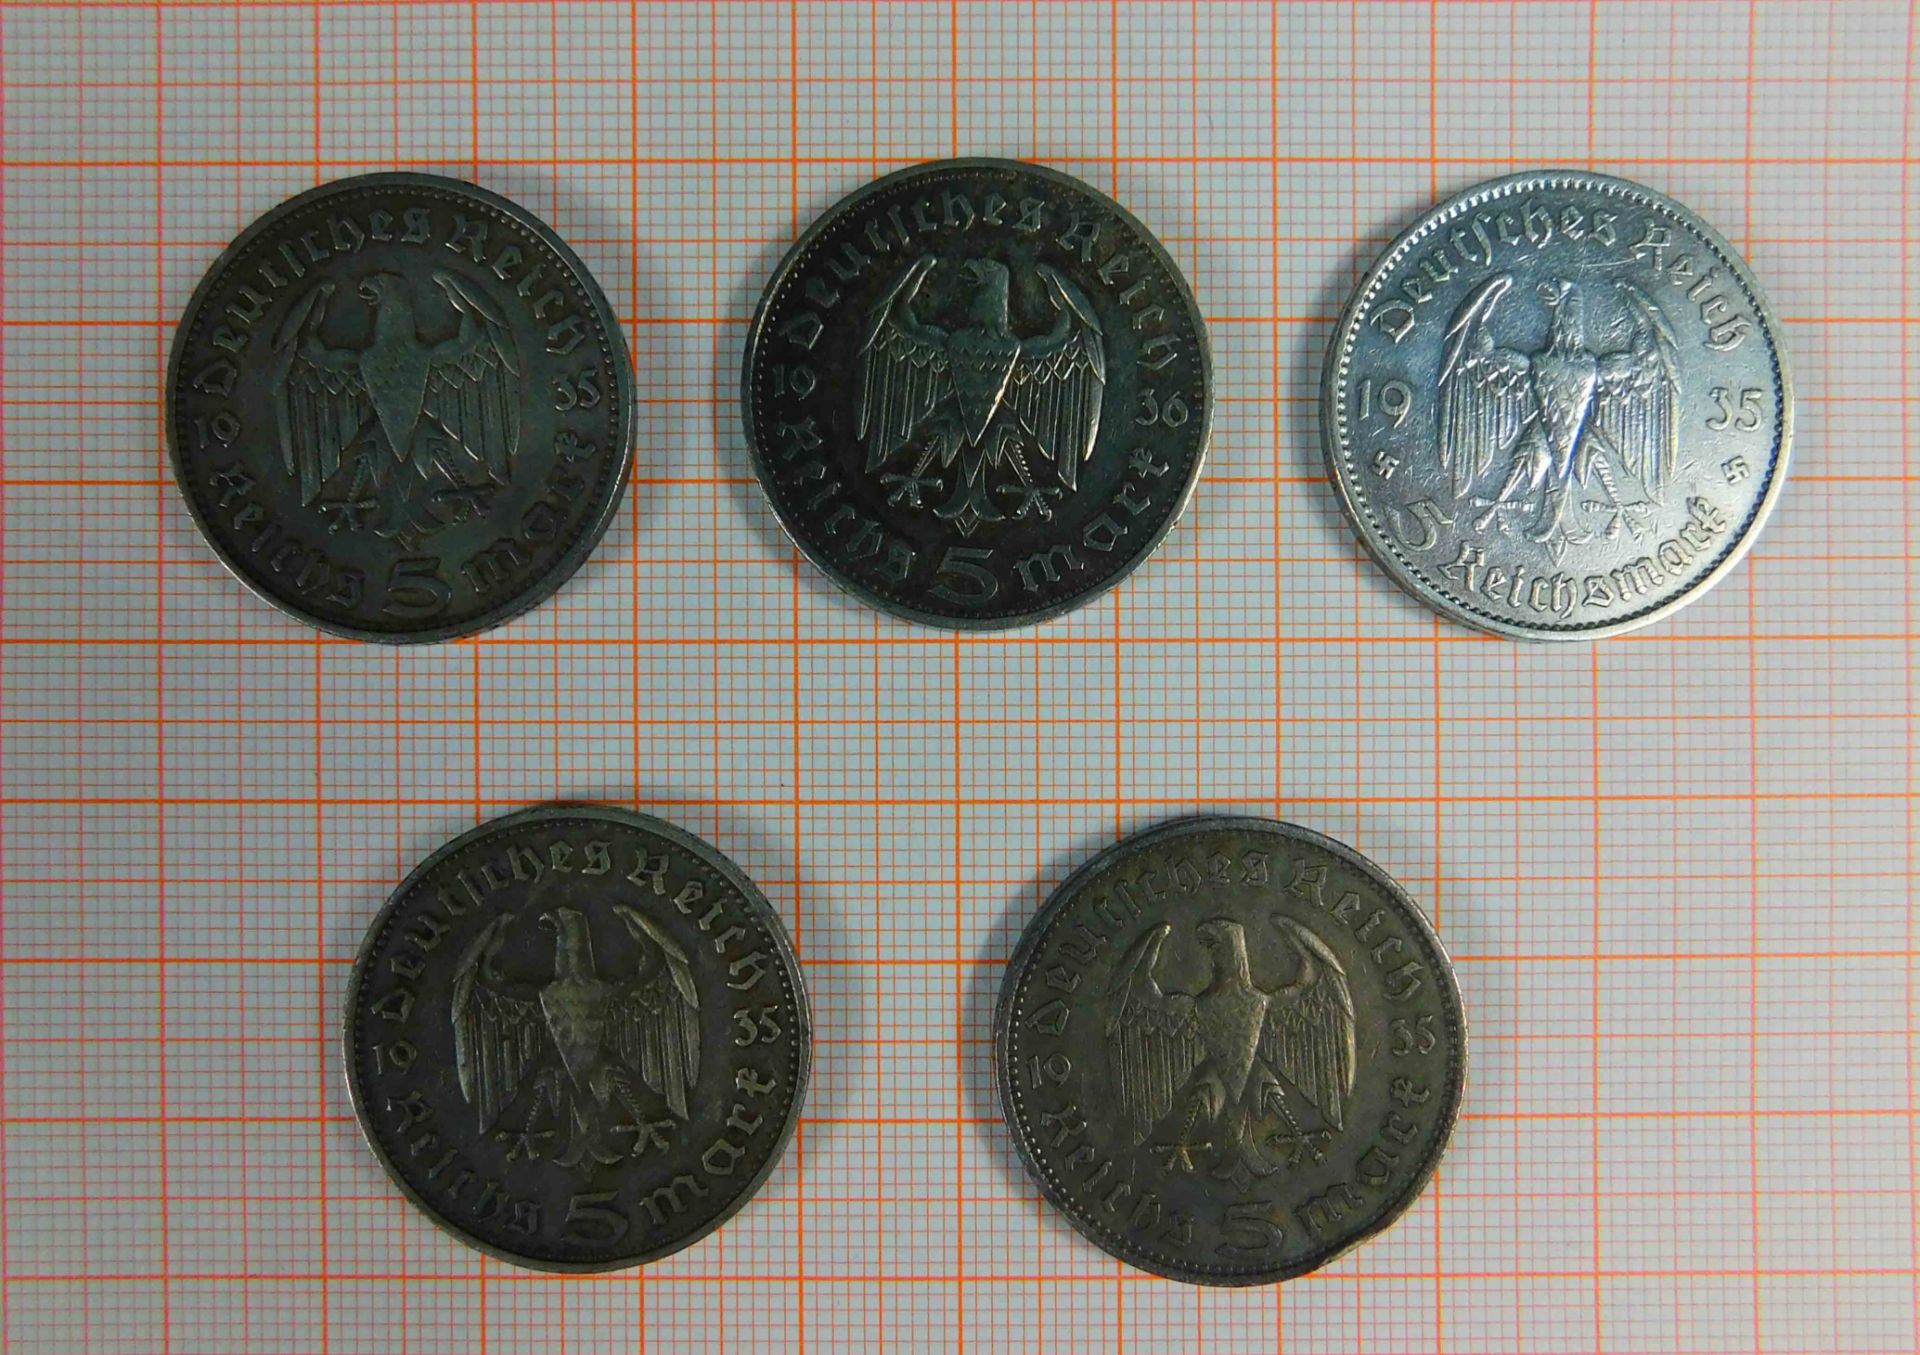 5 x 5 Reichsmark. Silbermünzen. Deutsches Reich. 1935. 1936. - Image 9 of 10